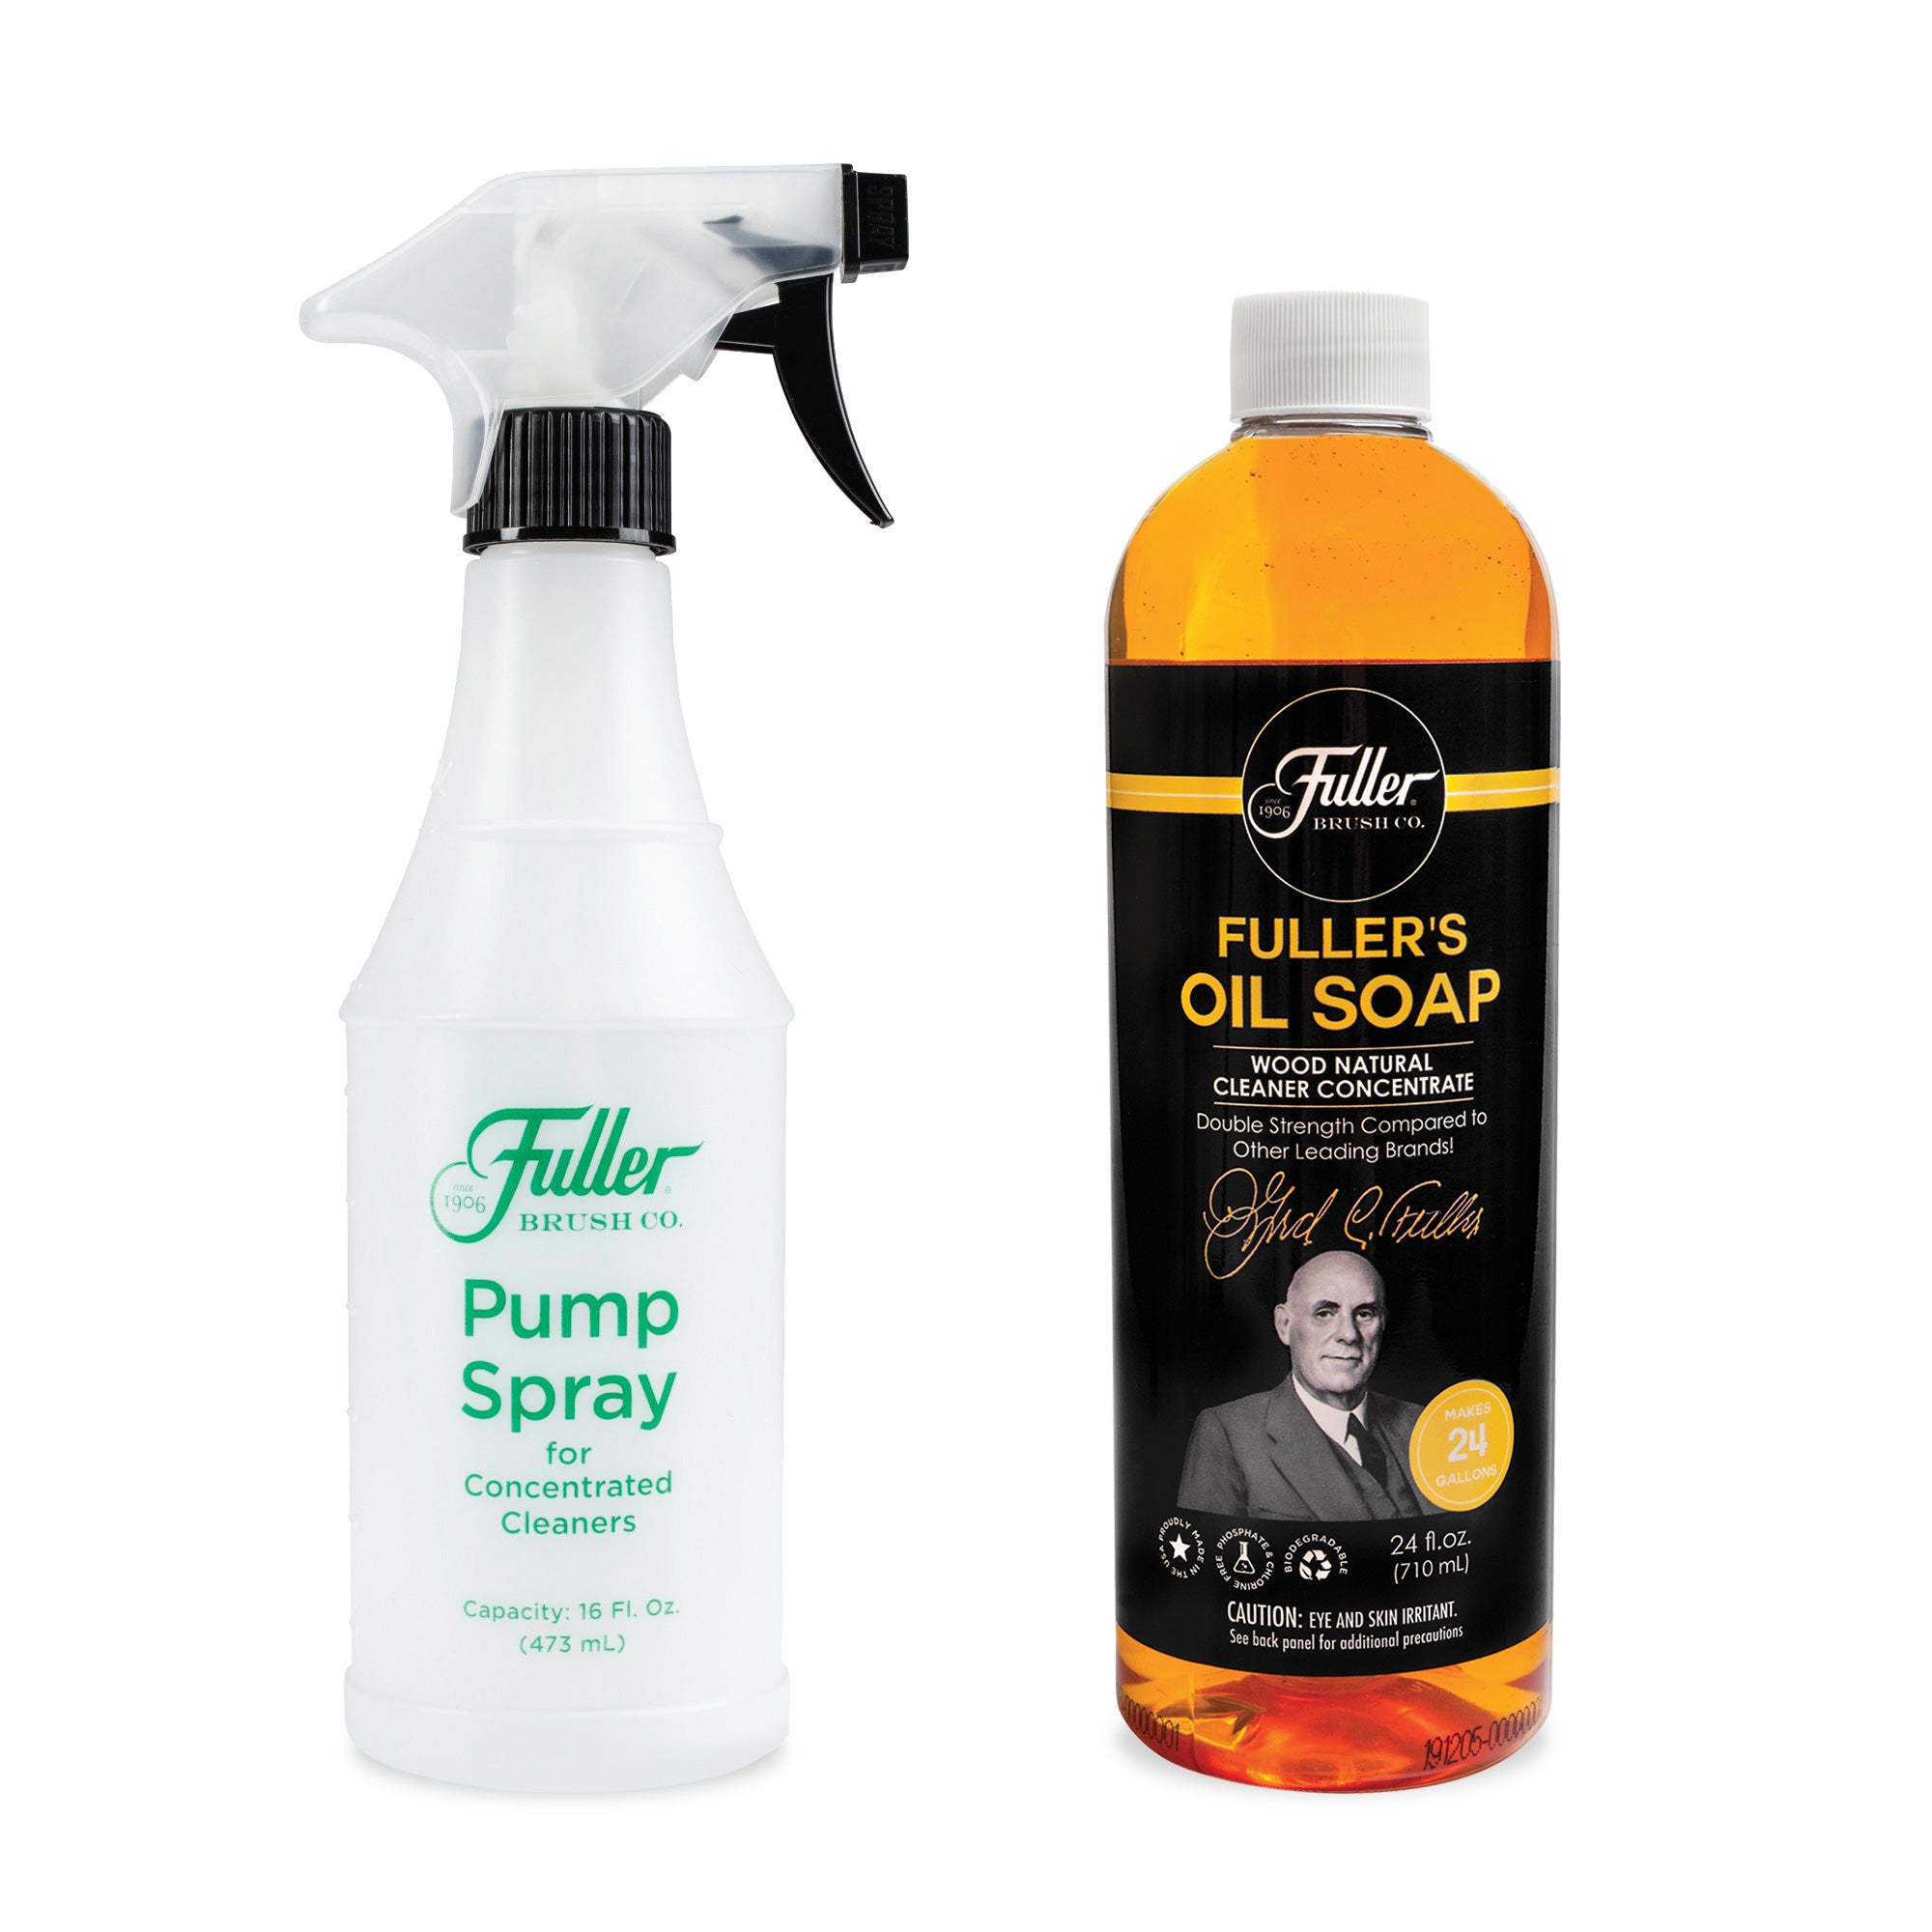 Fuller's Oil Soap Wood Natural Cleaner + Botella pulverizadora fácil de usar